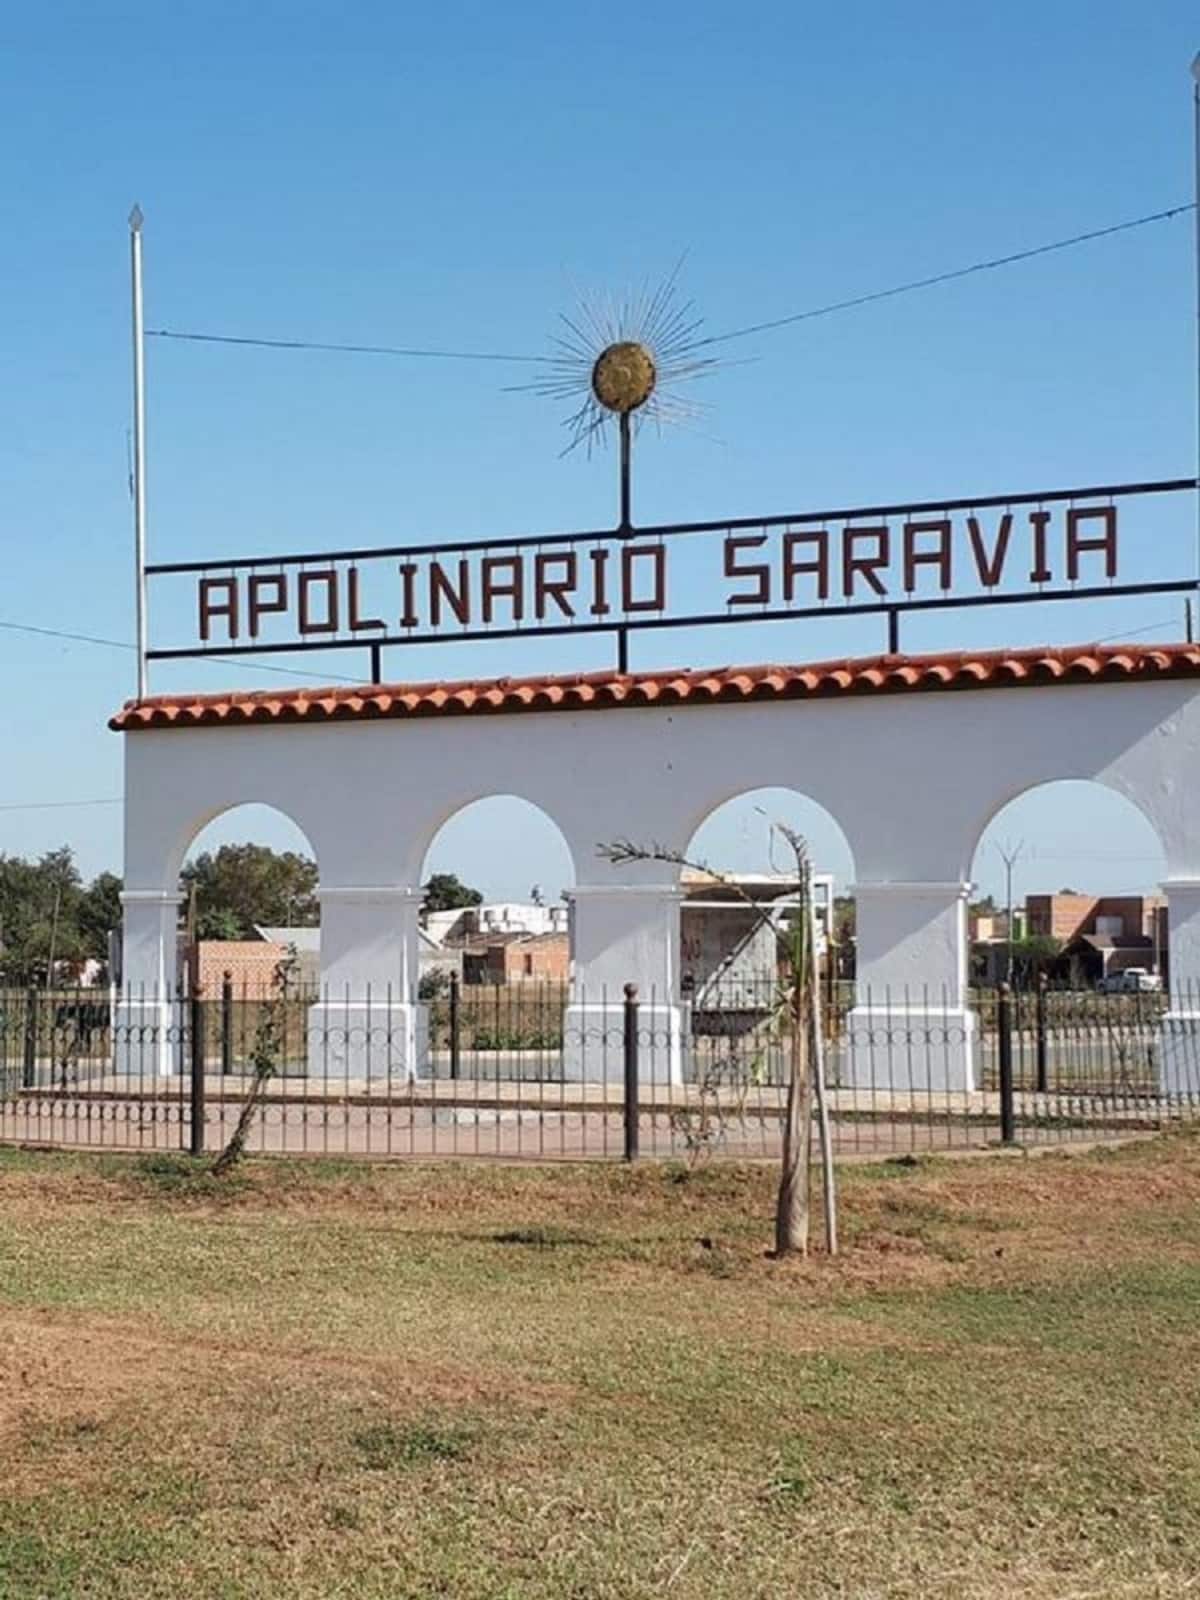 Apolinario Saravia